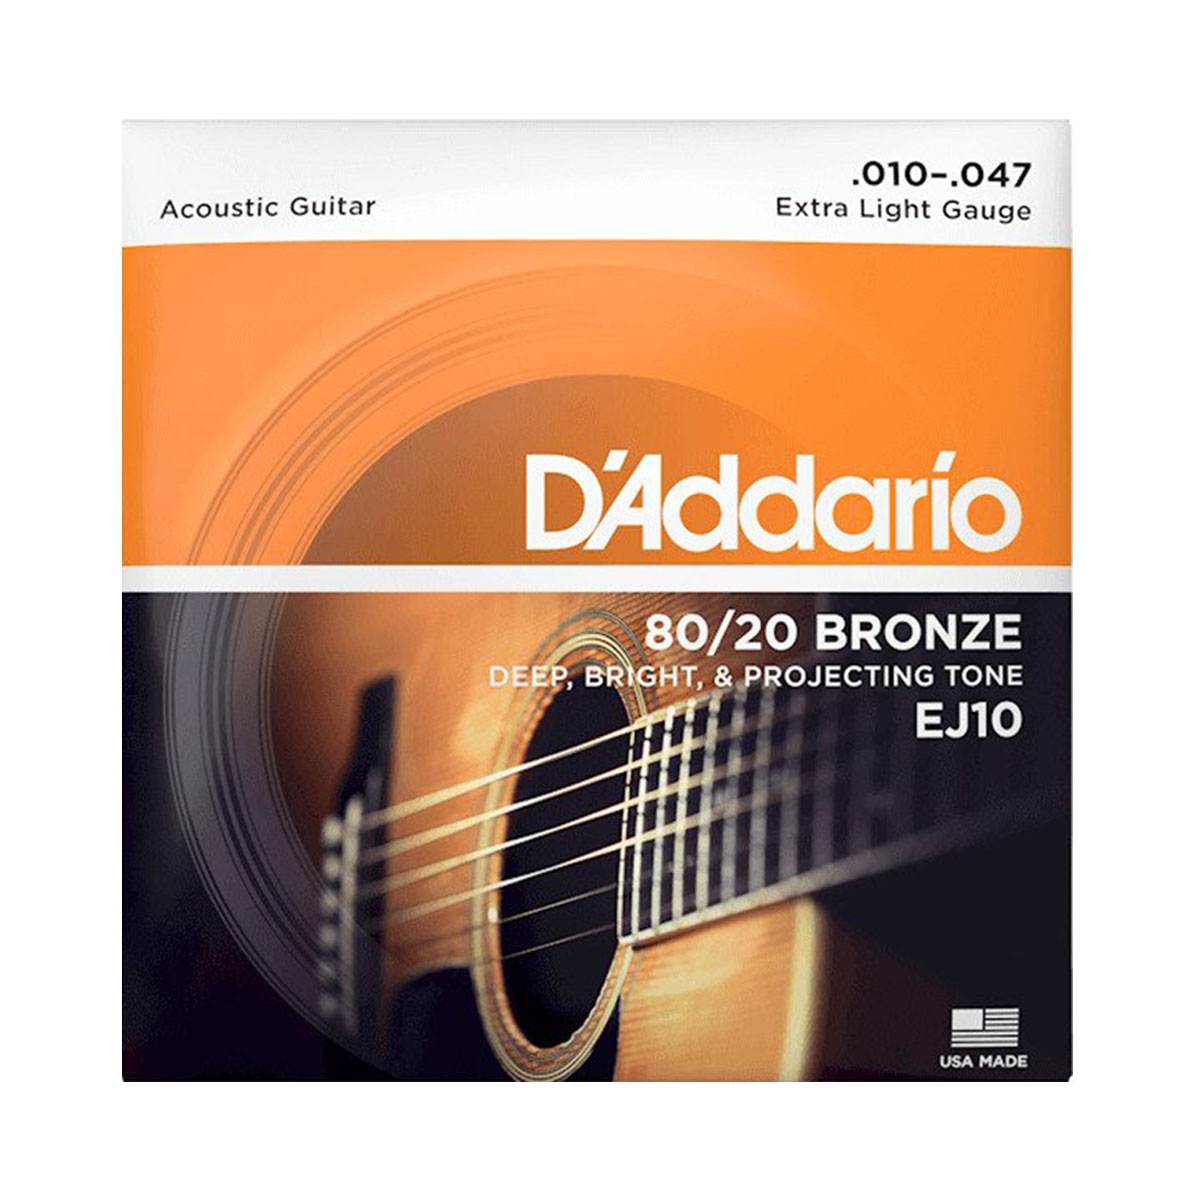 D'Addario EJ10 80/20 Bronze Extra Light Acoustic Guitar Strings<br>EJ10